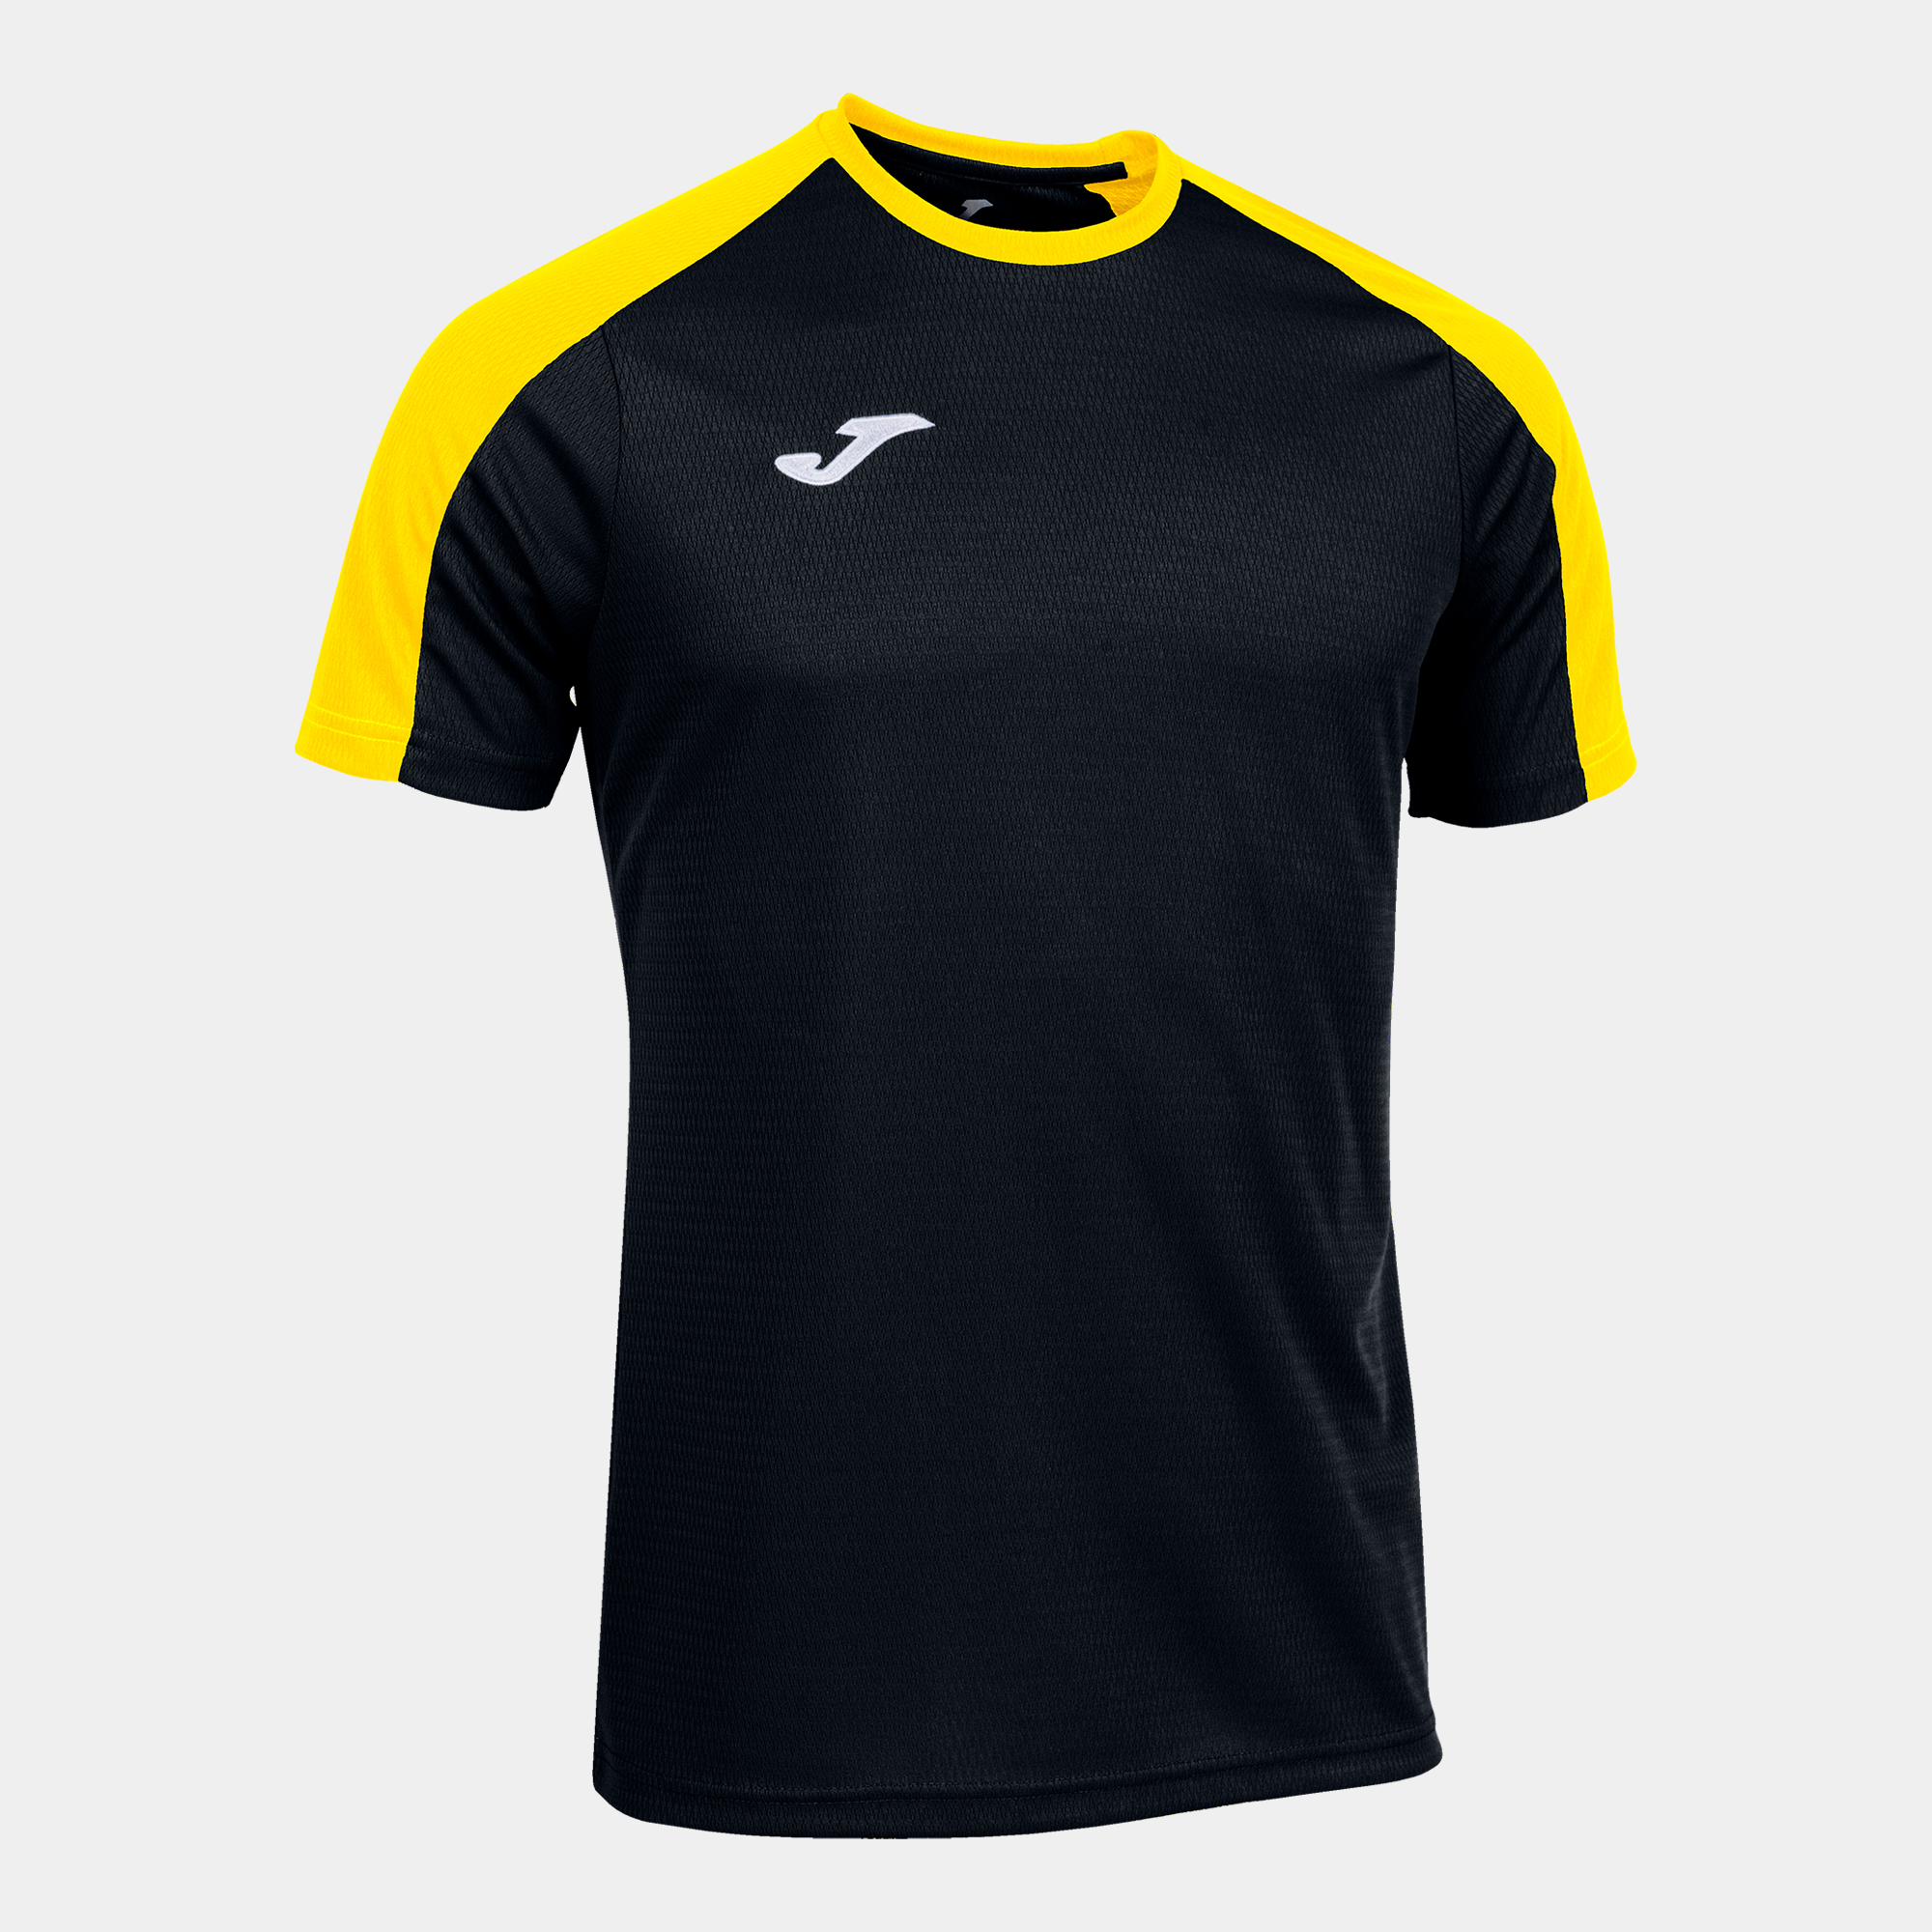 T-shirt Eco Championship Preto E Amarelo Joma - negro-amarillo - 